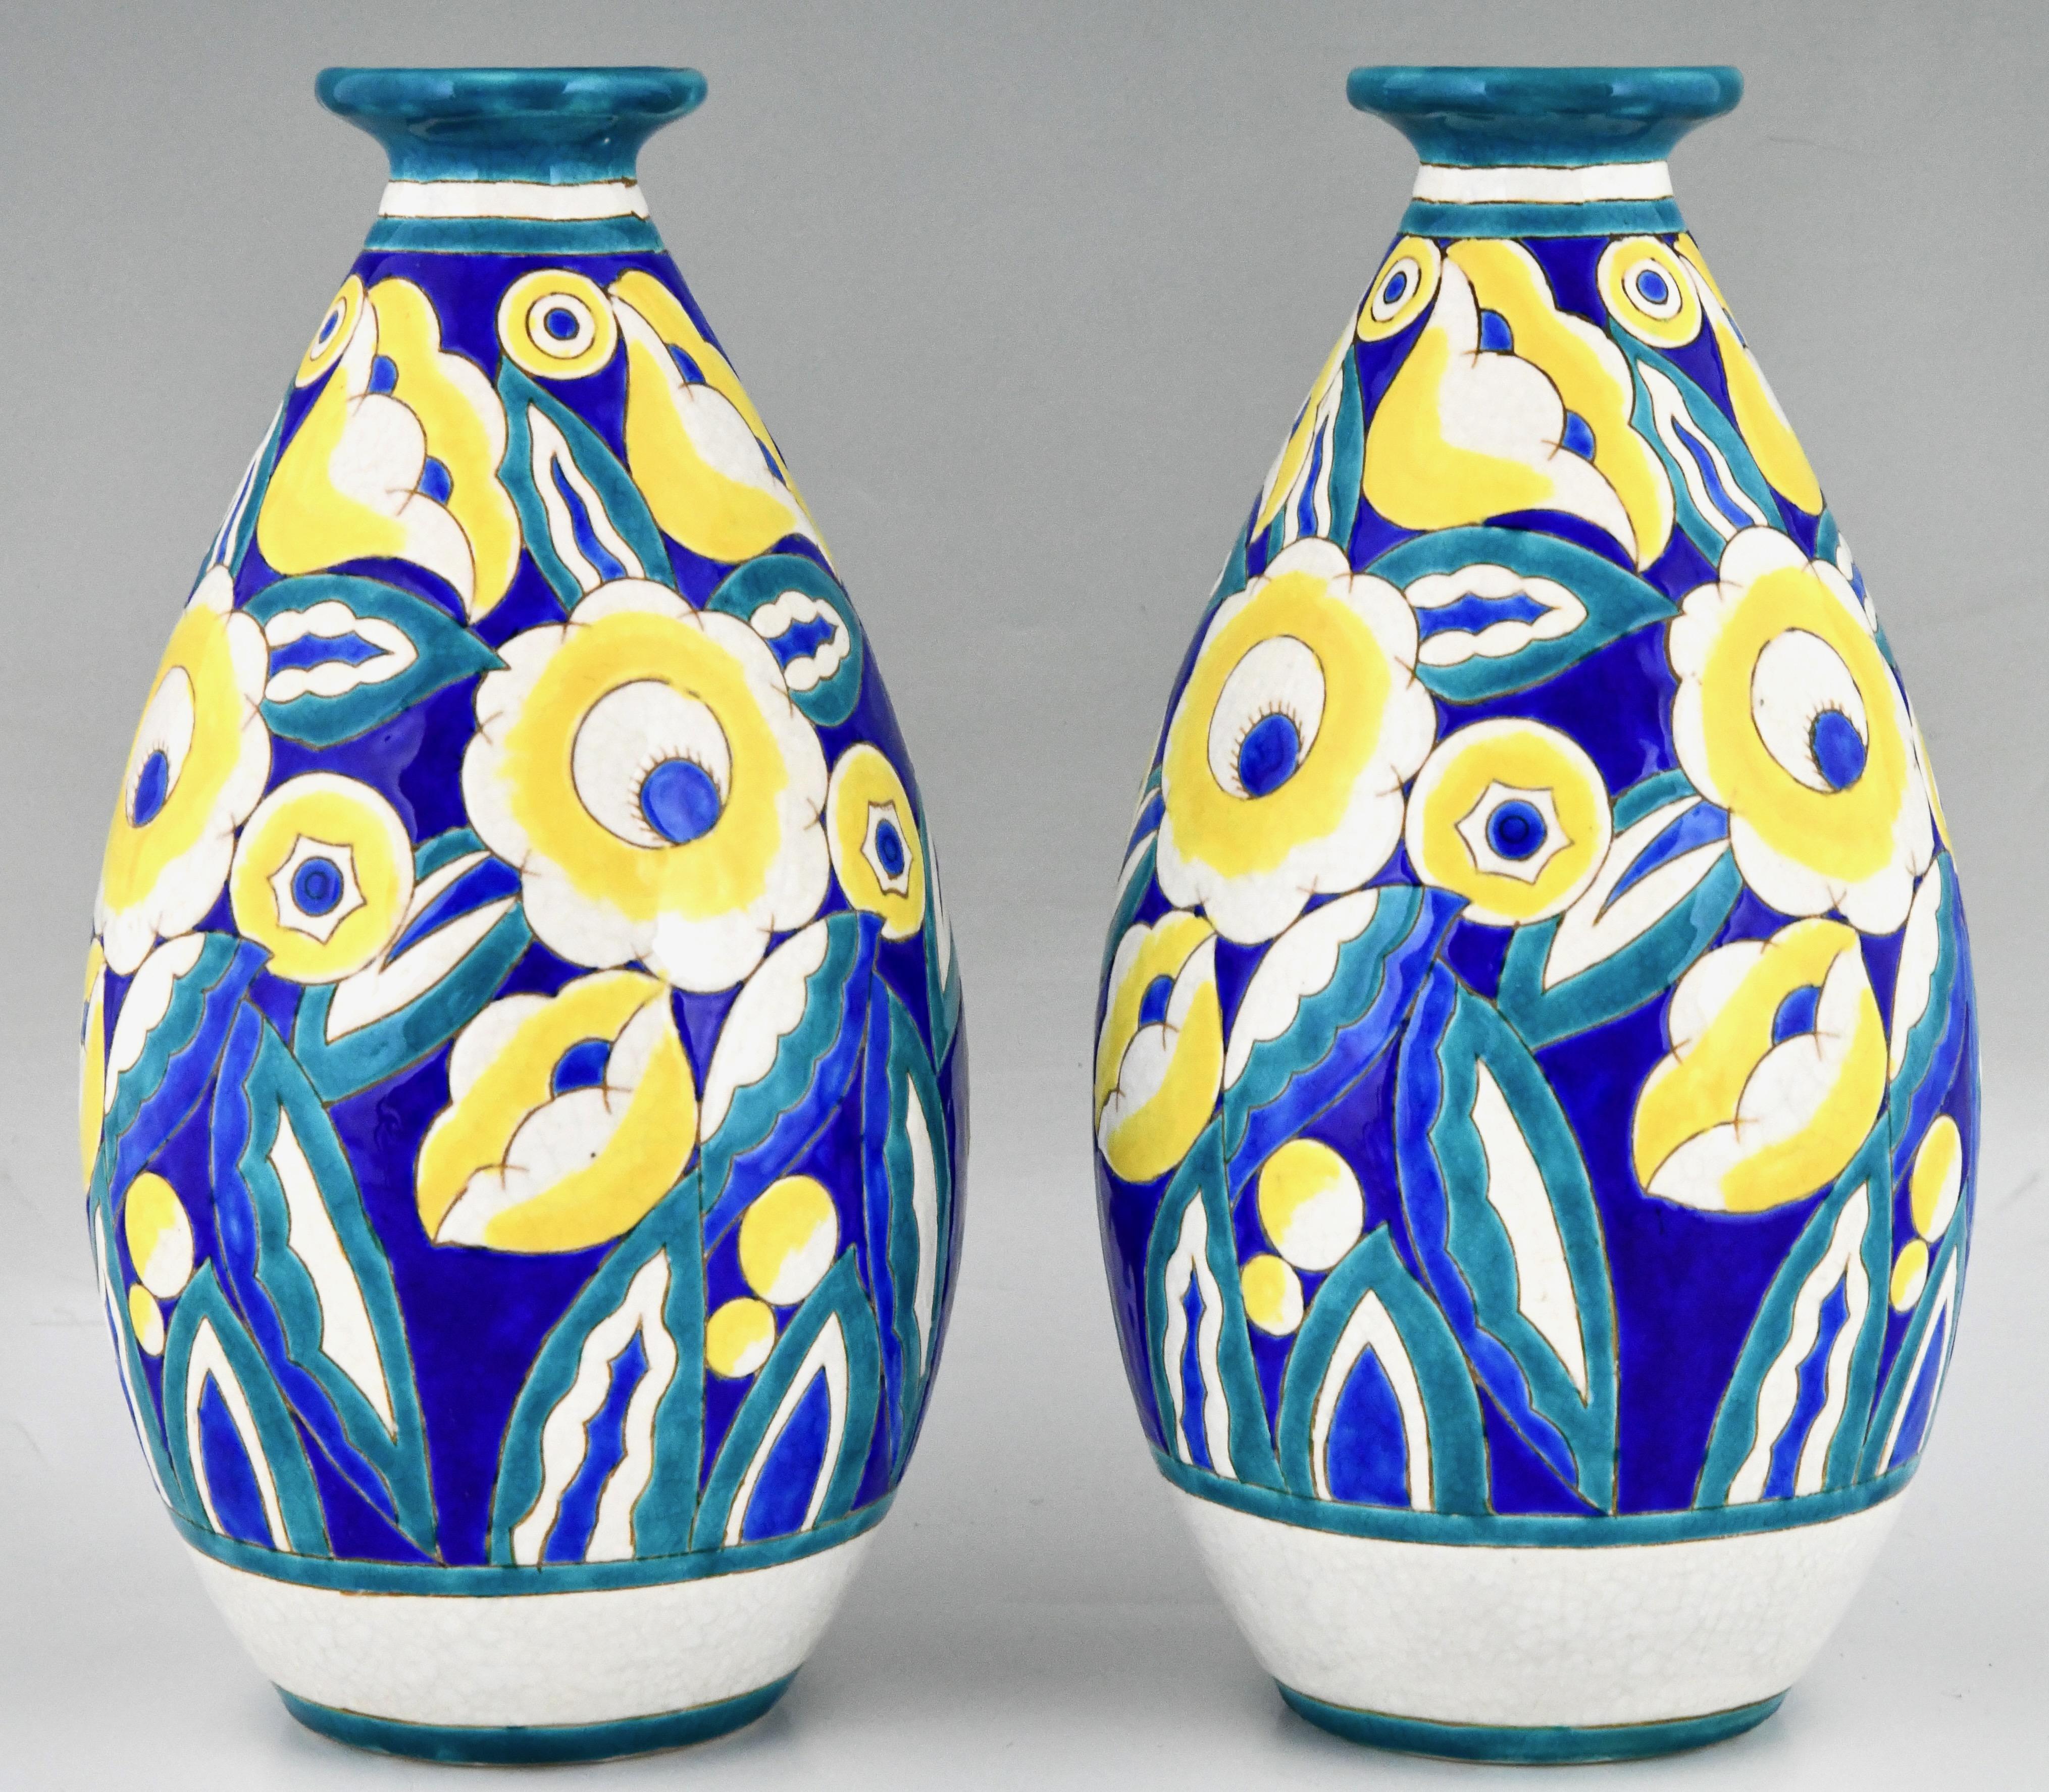 Glazed Pair of Art Deco Ceramic Vases with Flowers by Keramis, Belgium 1932